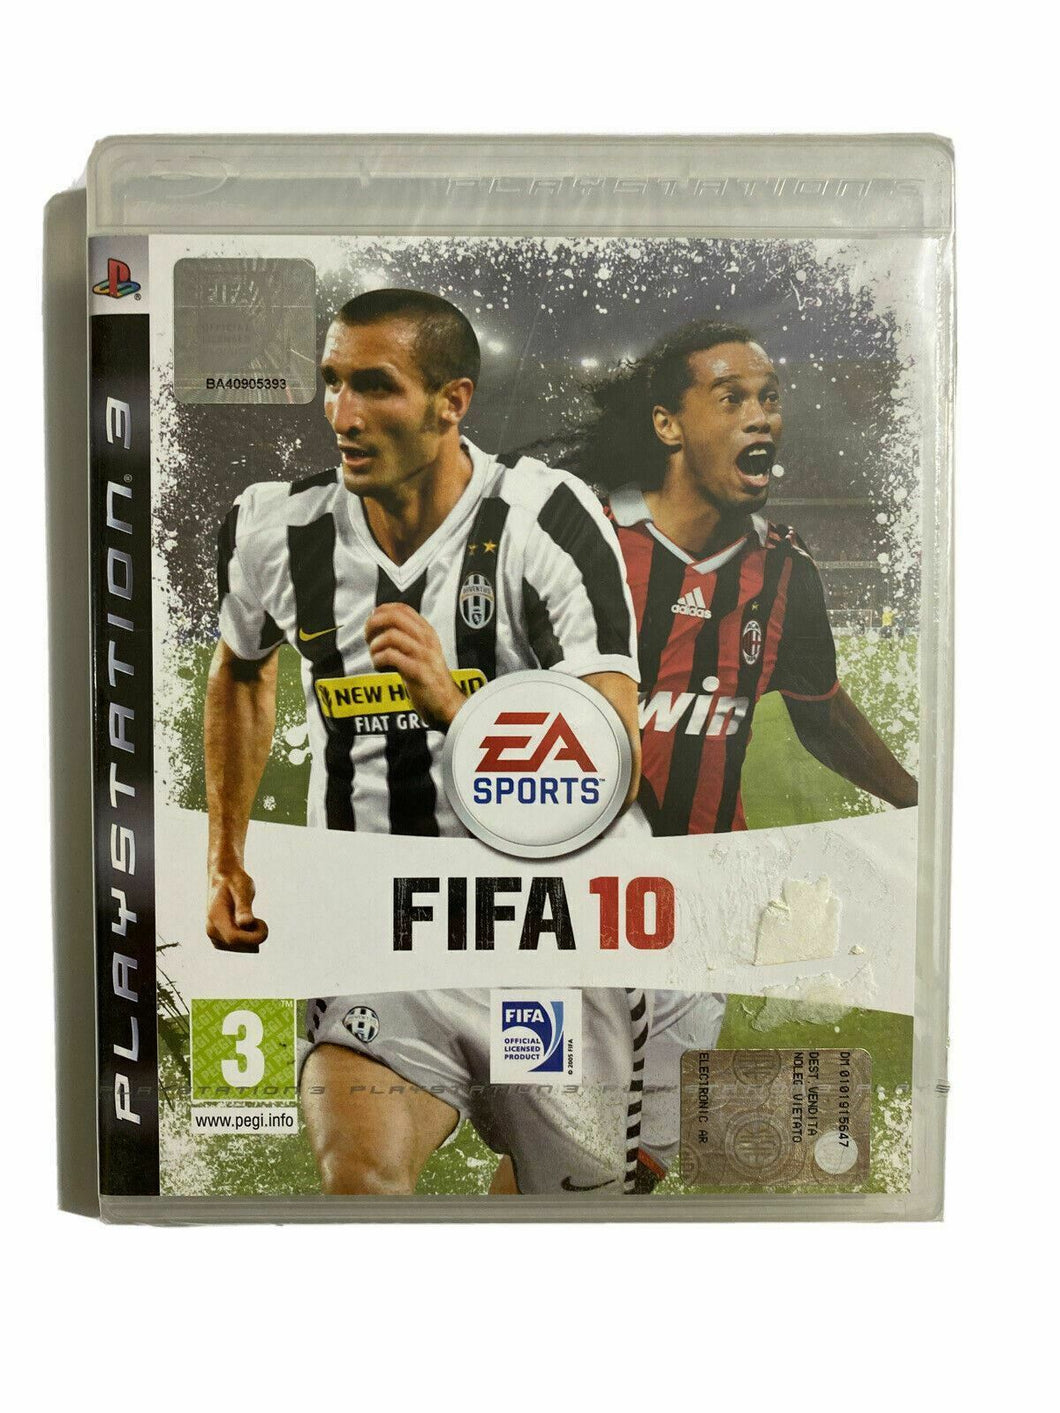 FIFA 10 - PS3 - ITALIANO NUOVO